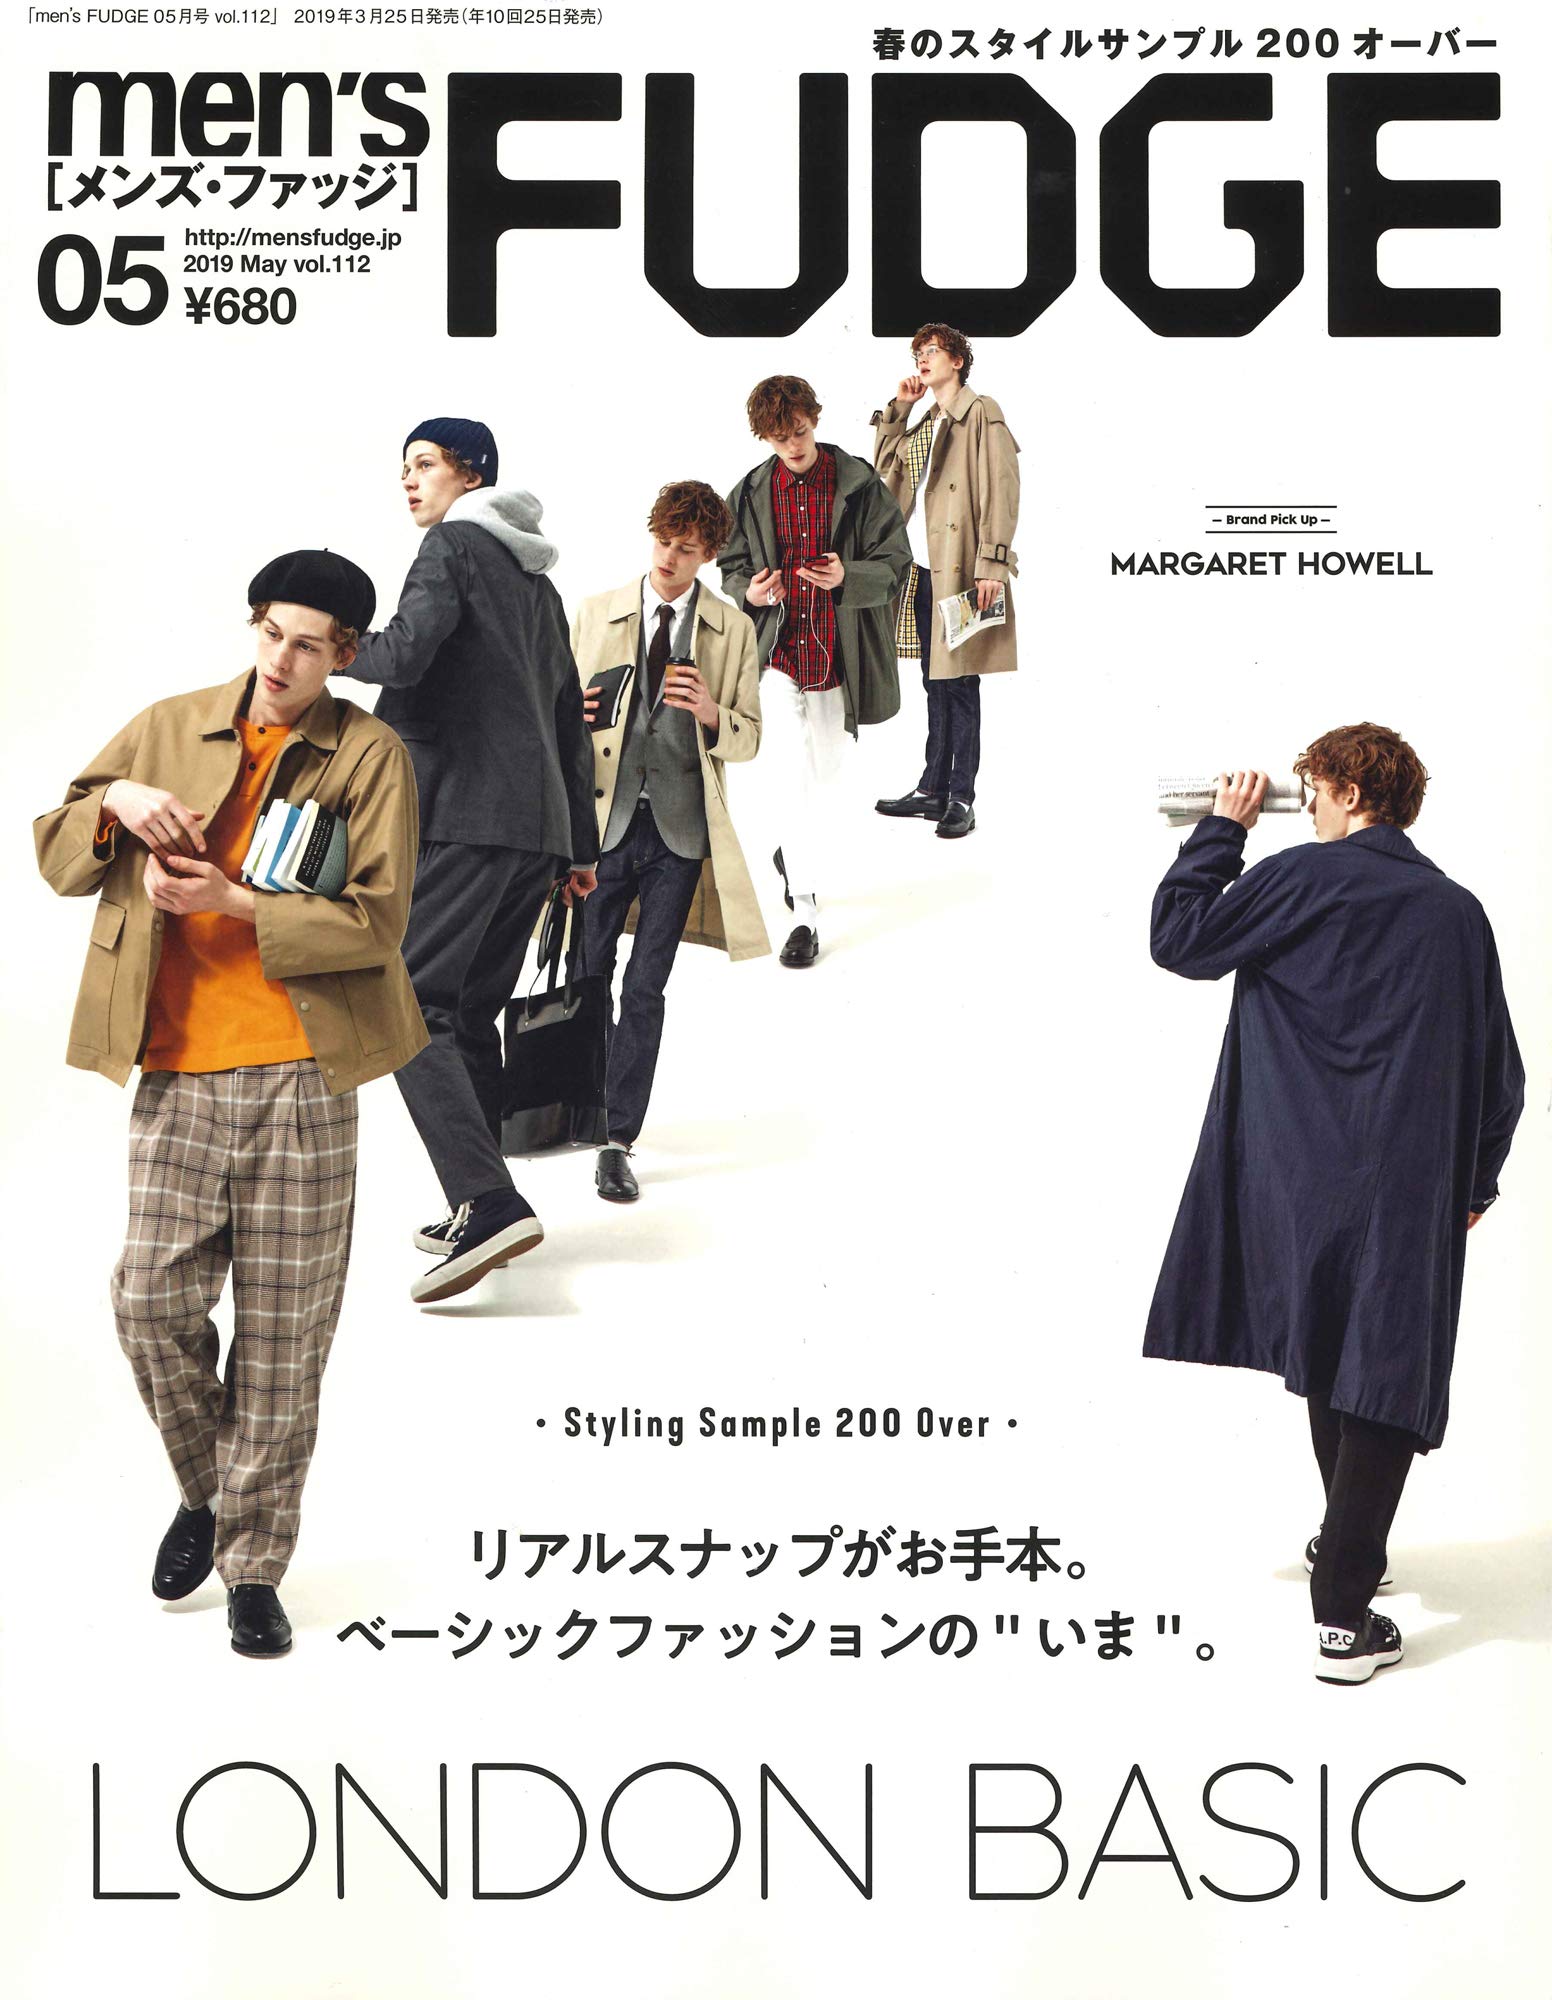 Men S Fudge 19年5月号 Vol 112 3月25日発売 三栄のプレスリリース